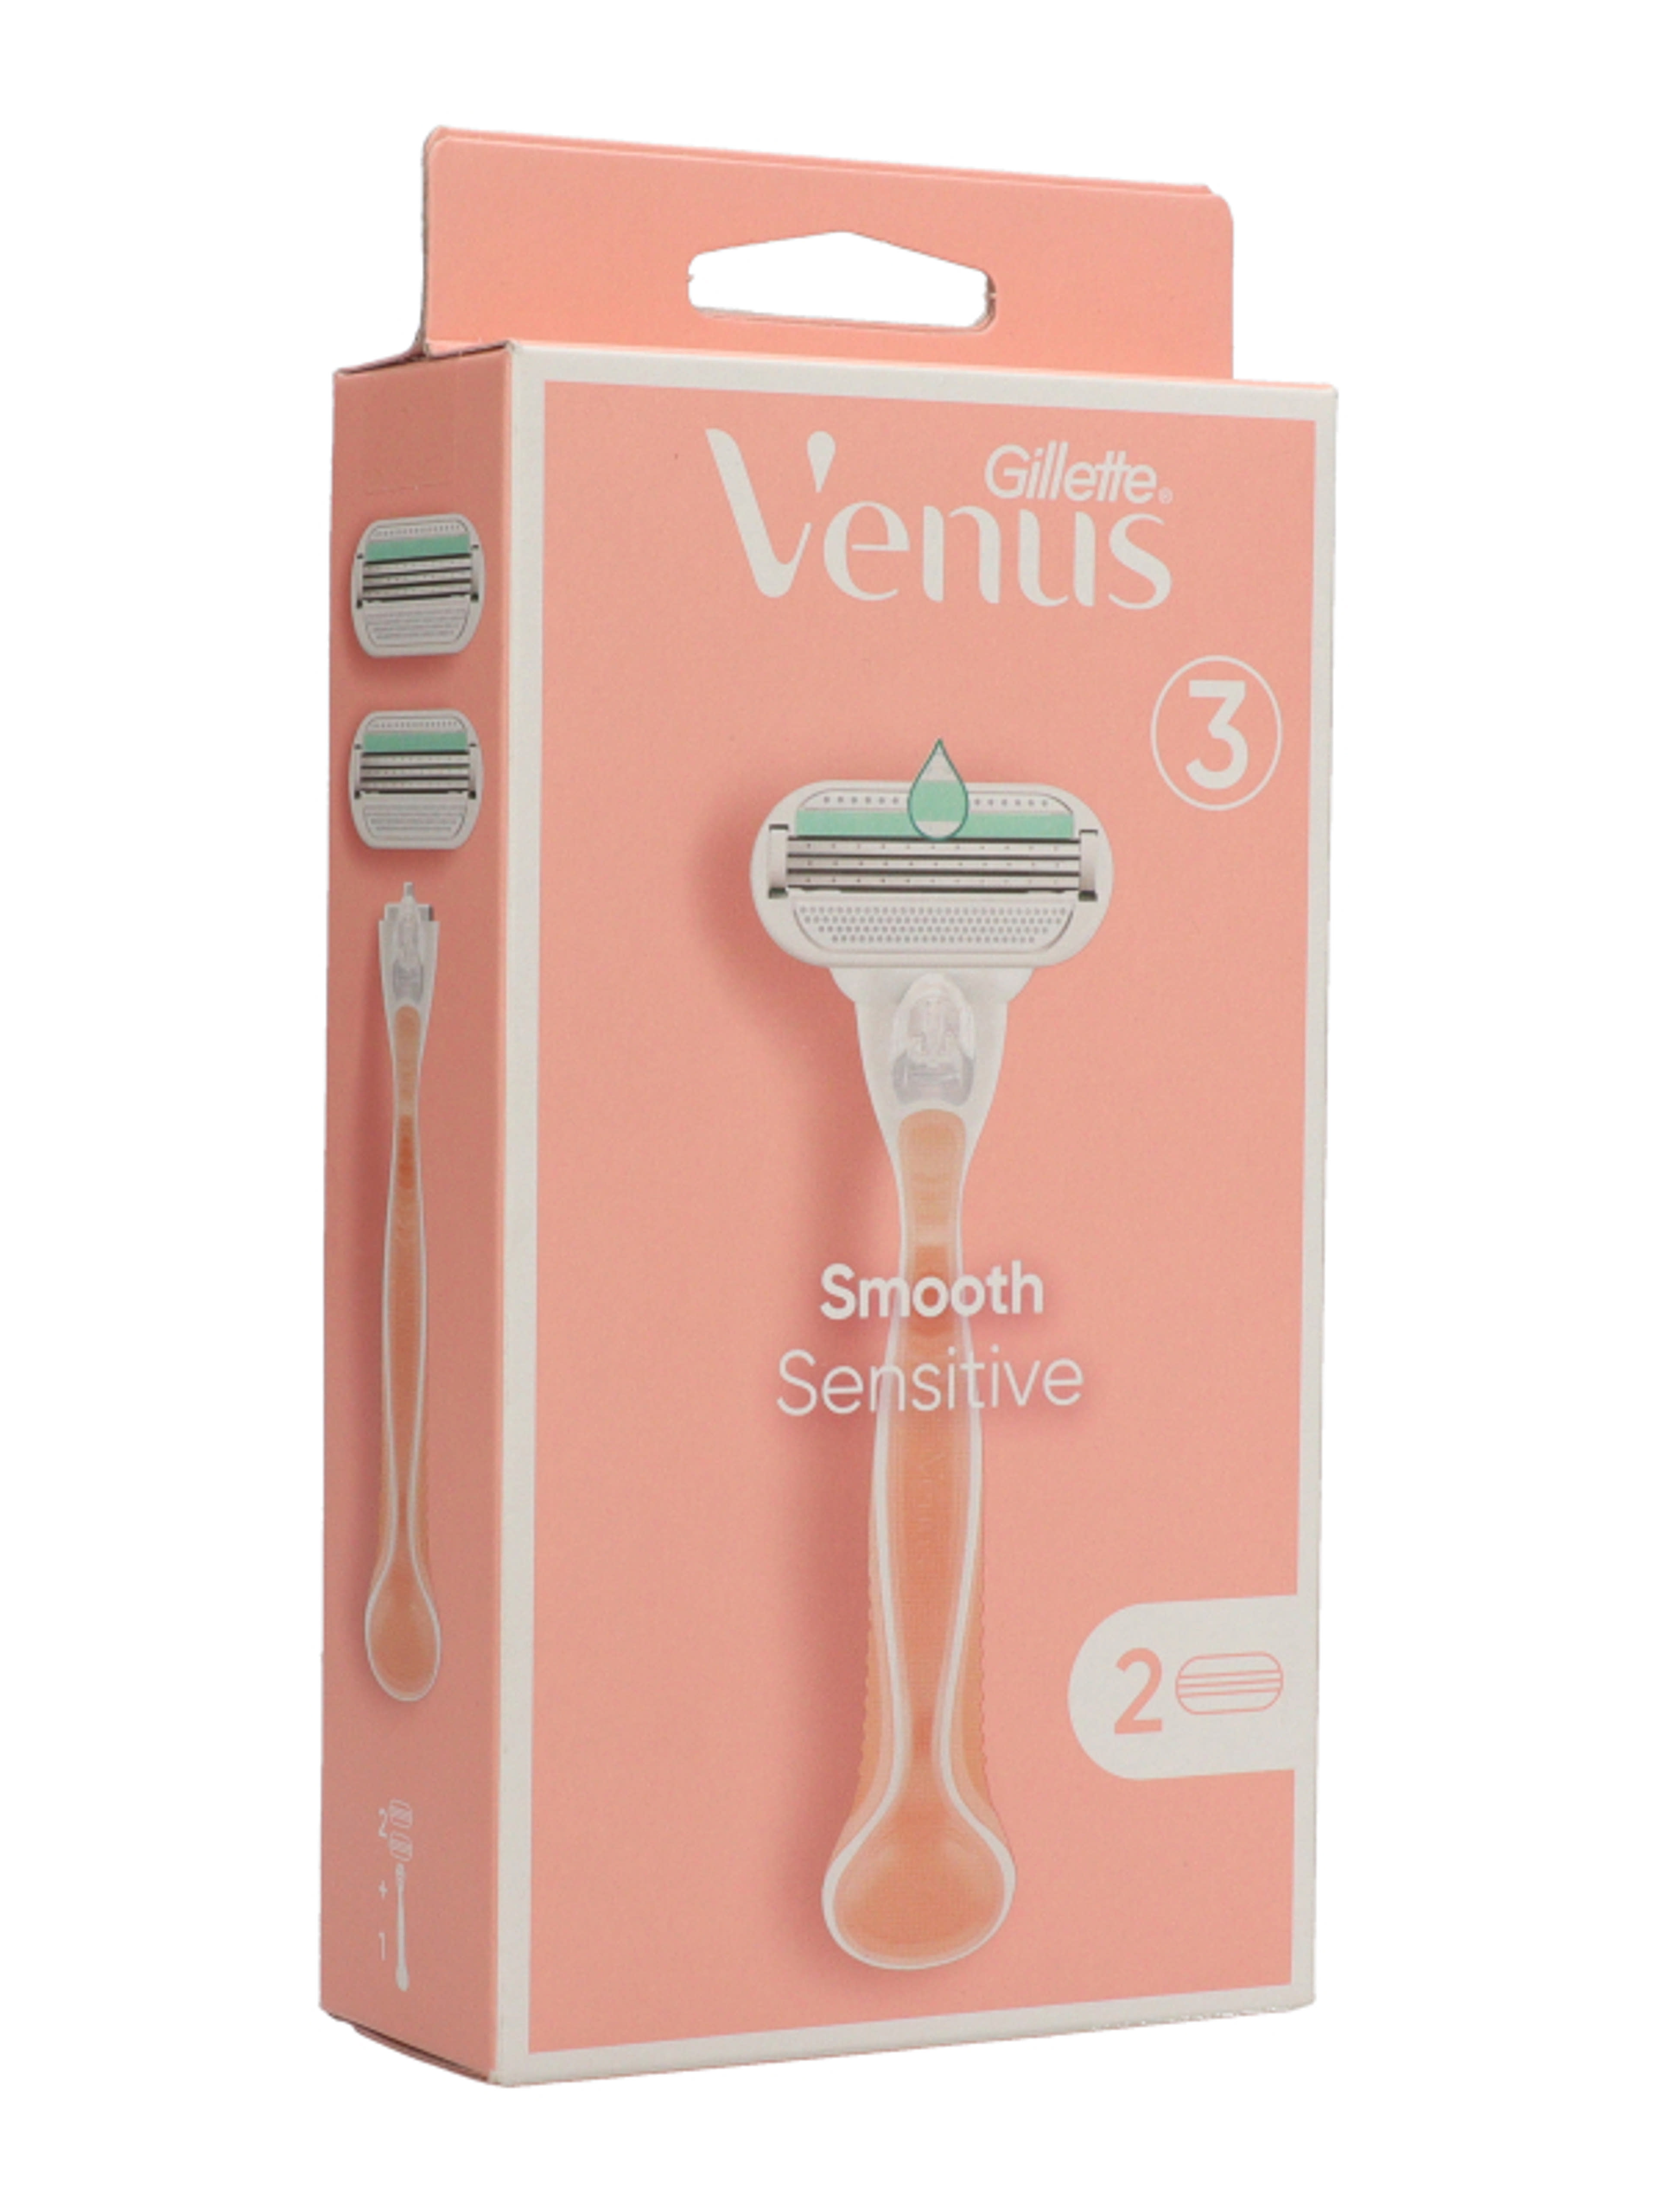 Gillette Venus Smooth Sensitive borotvakészülék 3 pengés + 2 borotvabetét - 1 db-11